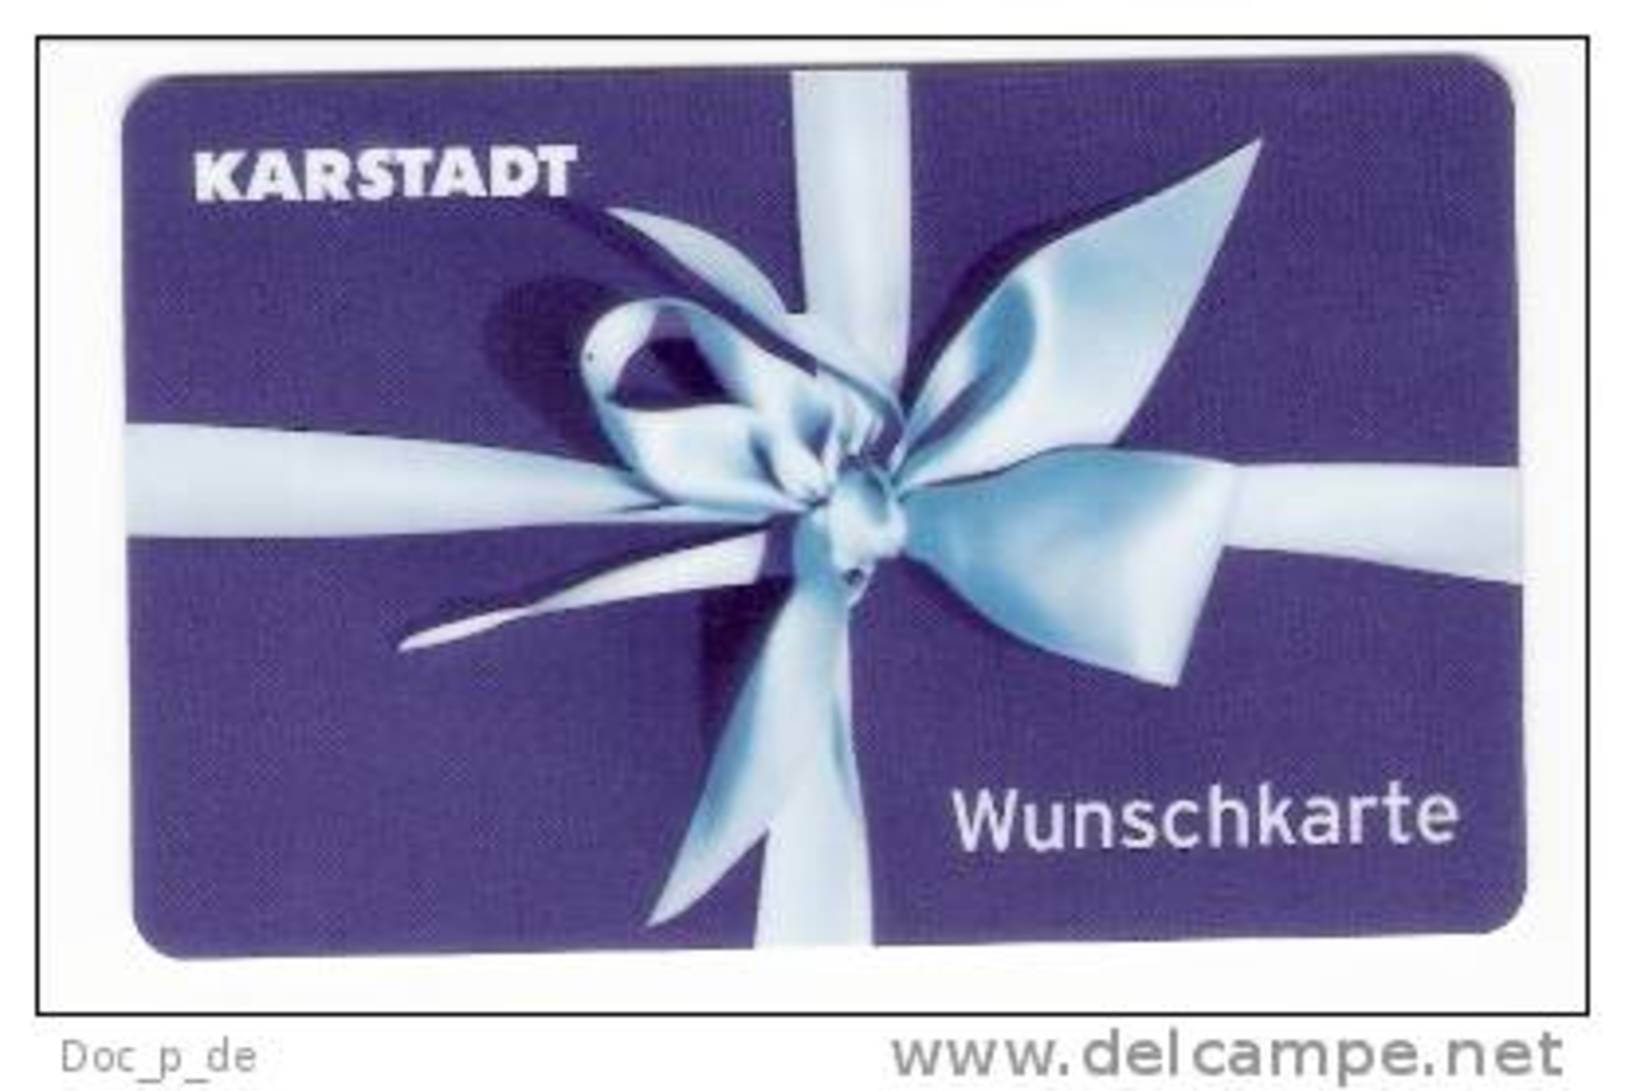 Germany - Karstadt - 1. Karte  - Geschenkgutschein - Giftcard - Gift Card - Gutschein Card - Gift Cards